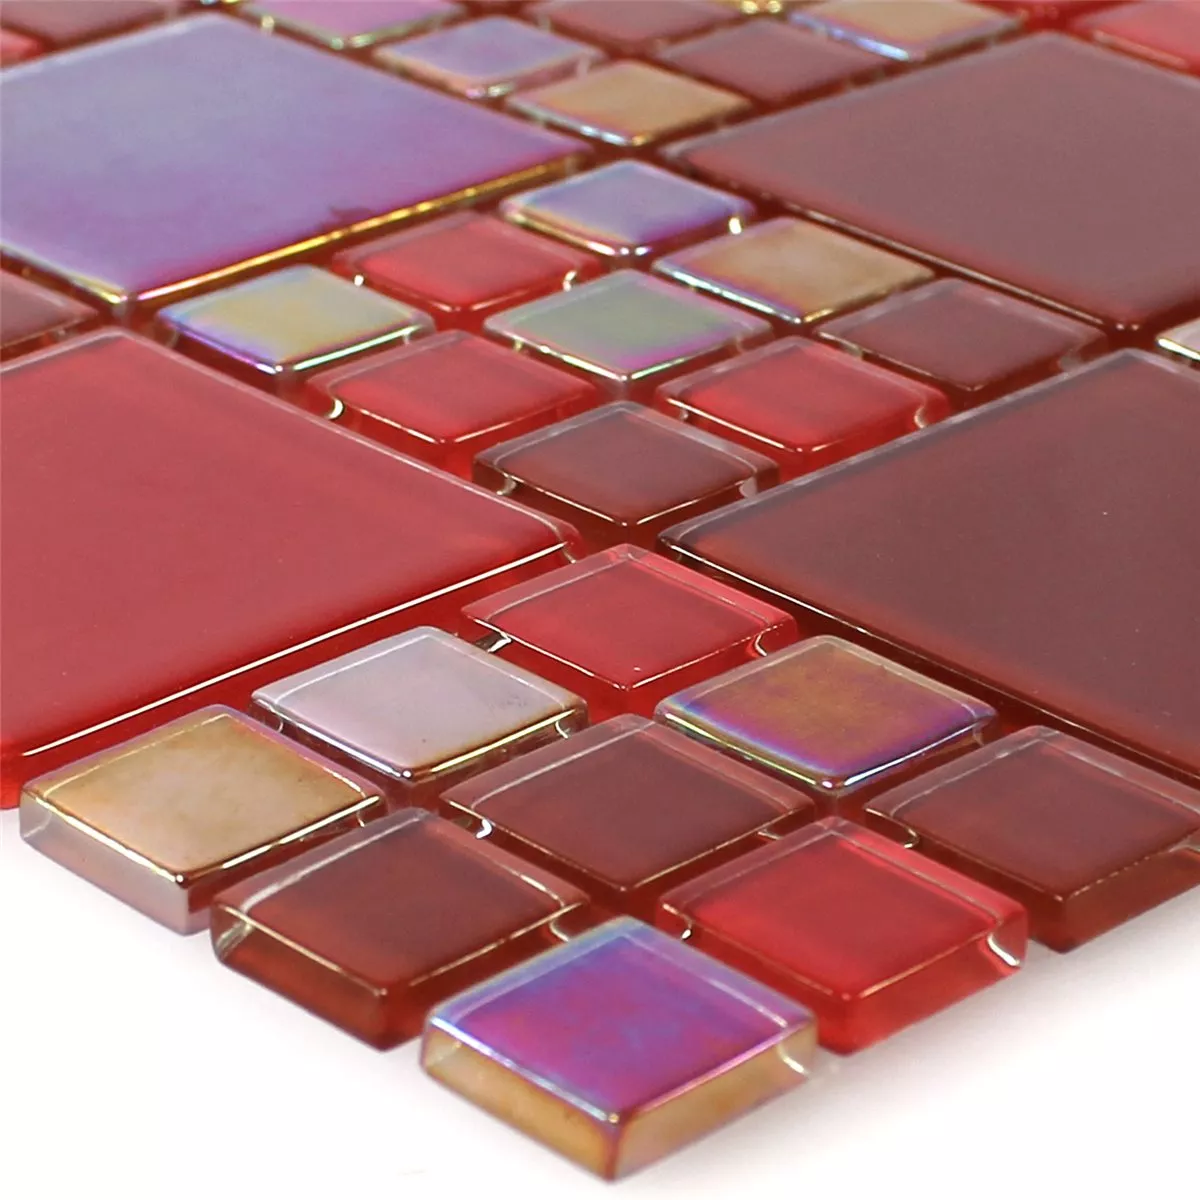 Muster von Glasmosaik Fliesen Rot Elox